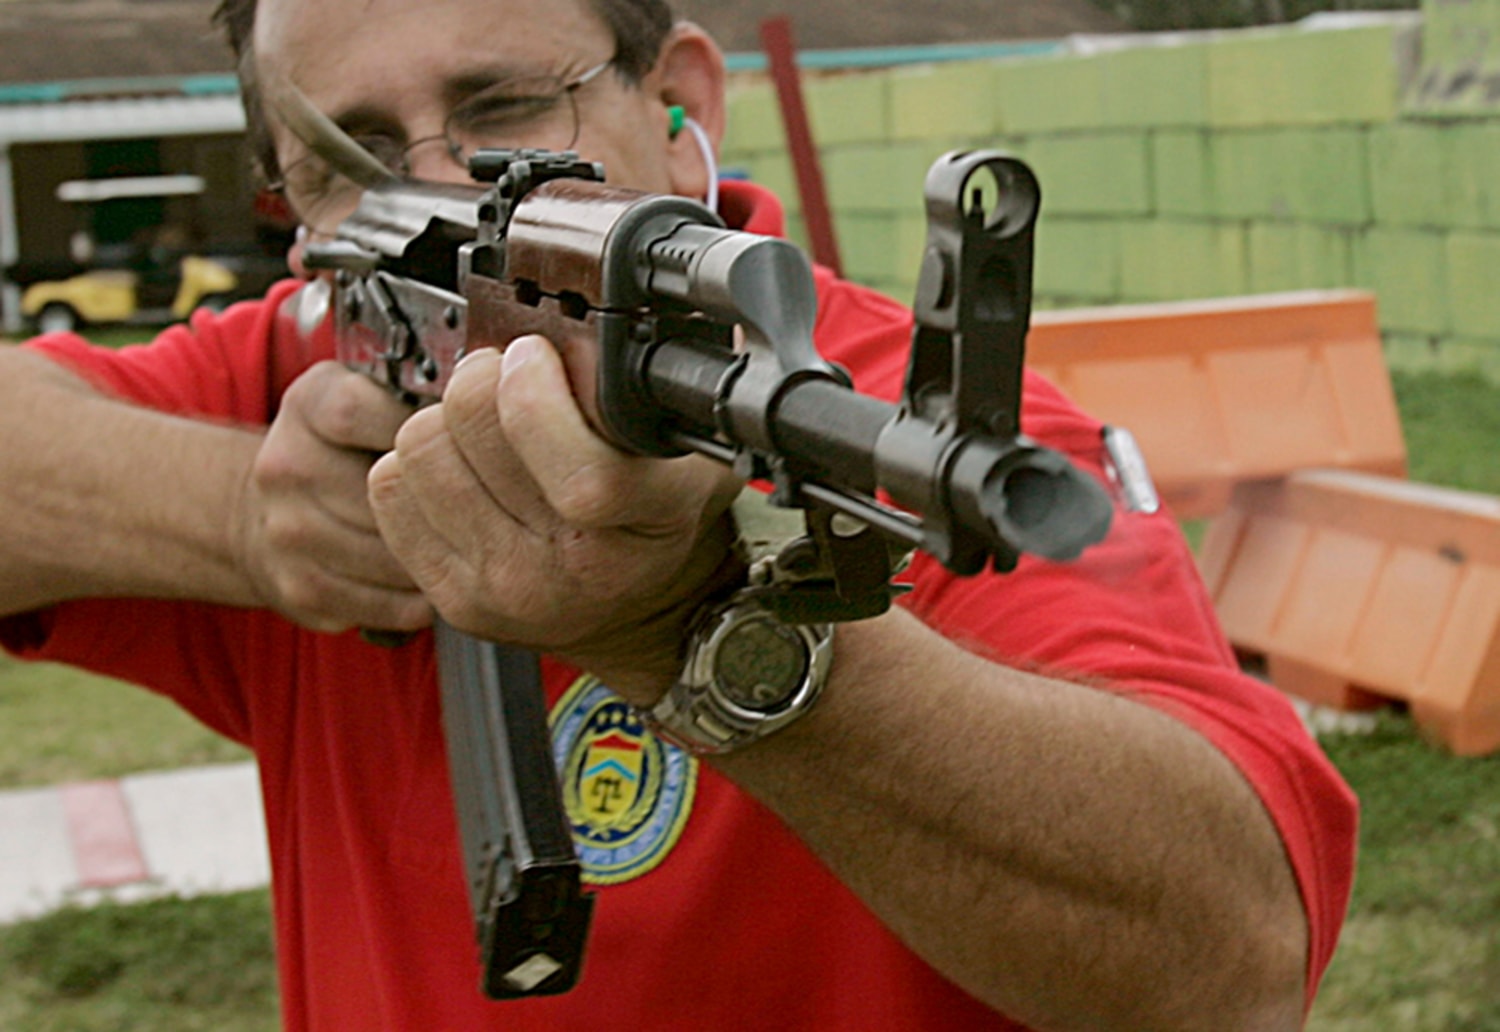 AK-47-type guns turn up more often in U.S.